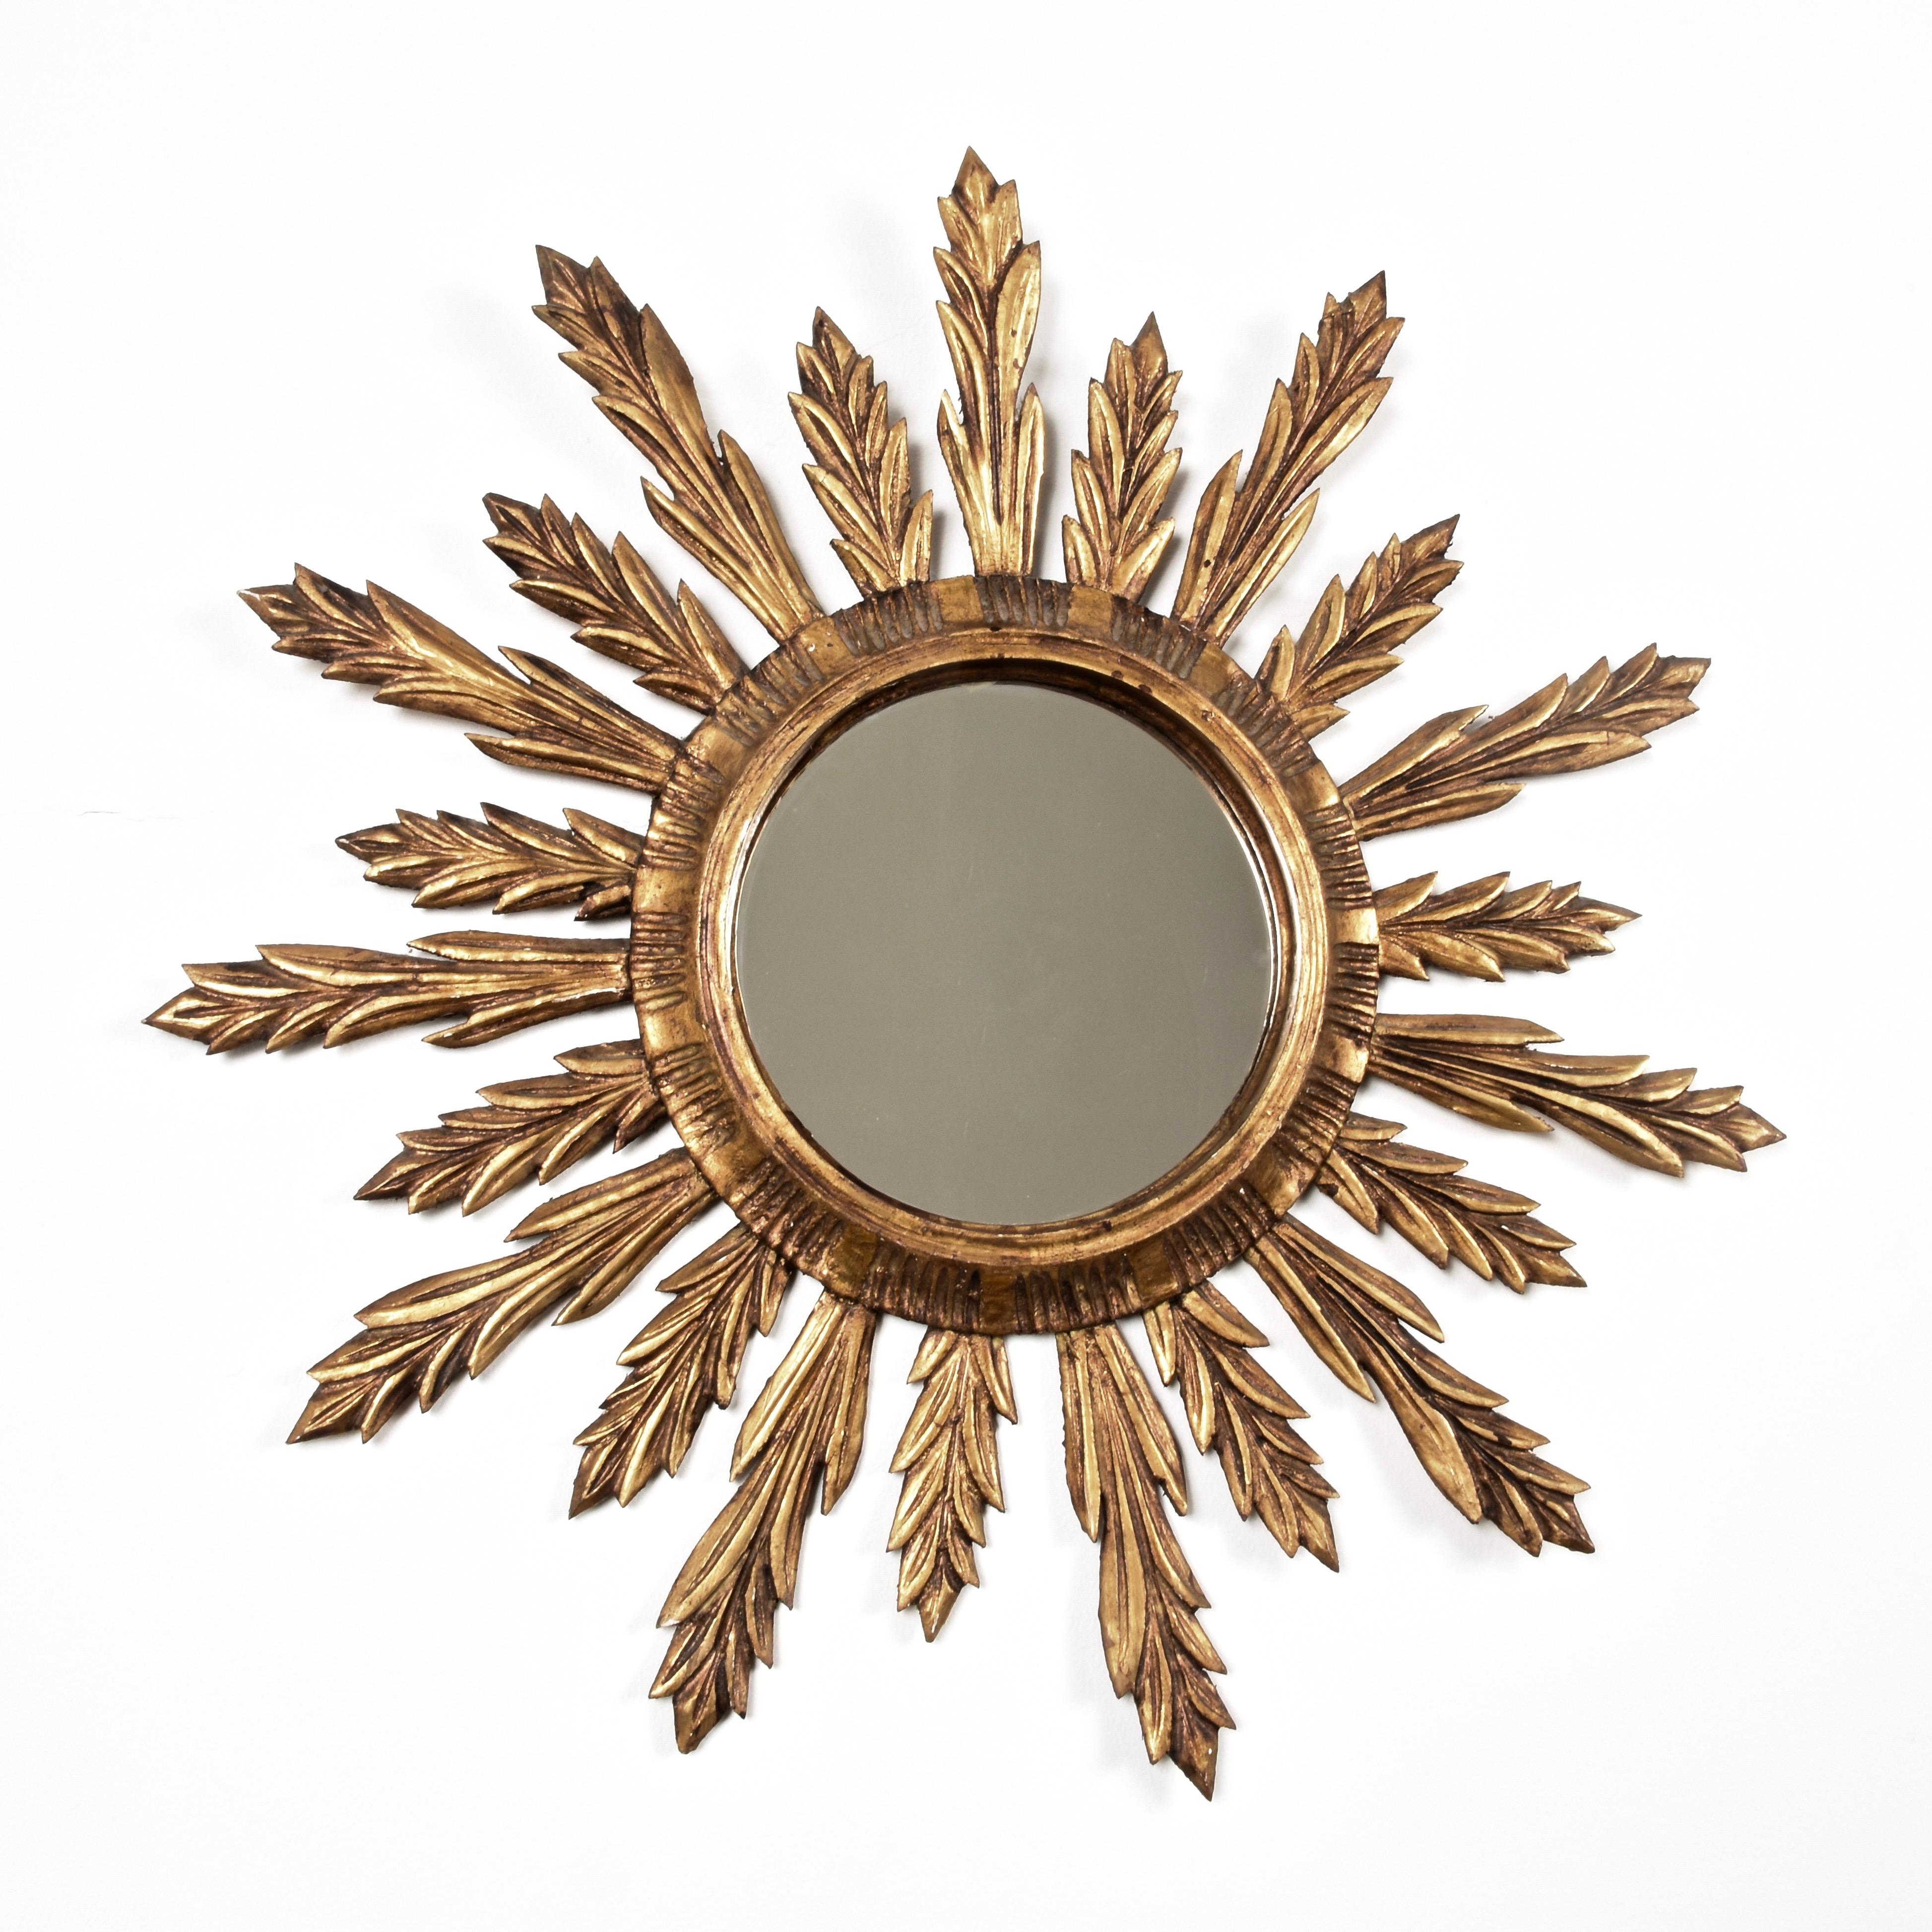 Wunderschöner Mid-Century Modern vergoldetes Holz sunburst Wandspiegel. Dieser erstaunliche Spiegel wurde in den 1950er Jahren in Frankreich hergestellt.

Die großen und kleinen Sonnenstrahlen sind einfach herrlich, denn sie wirken wie